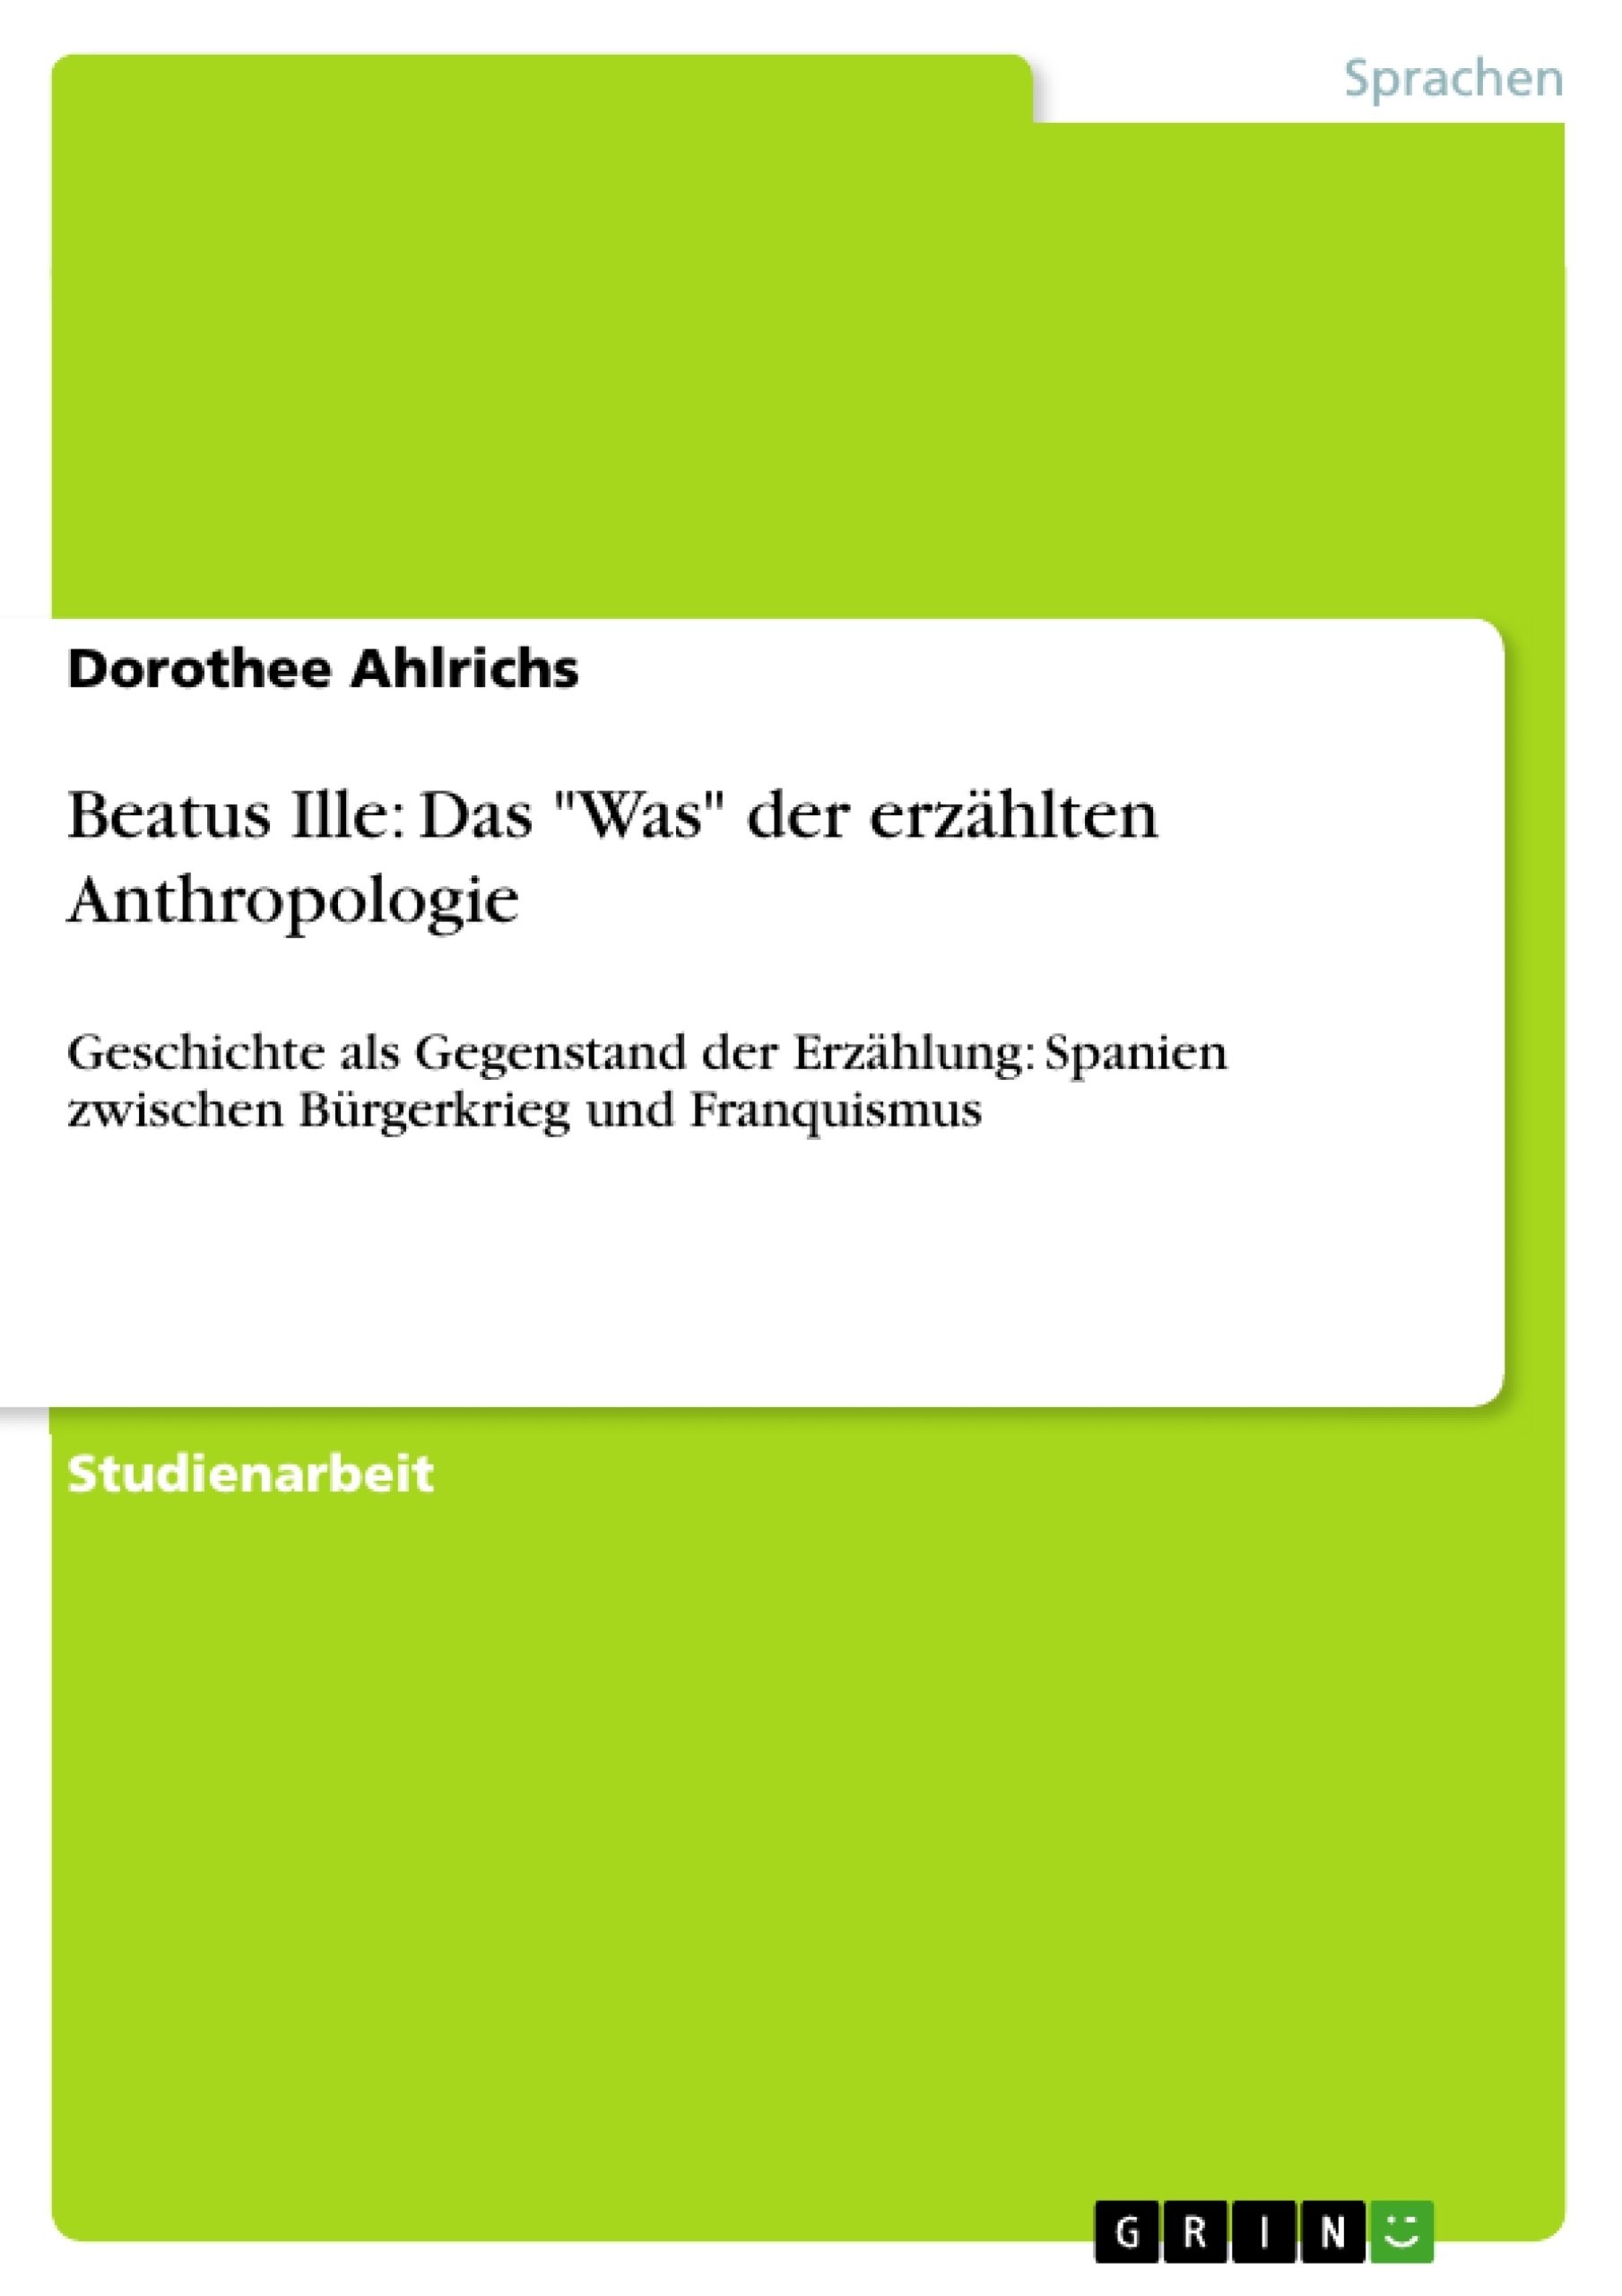 Título: Beatus Ille: Das "Was" der erzählten Anthropologie 